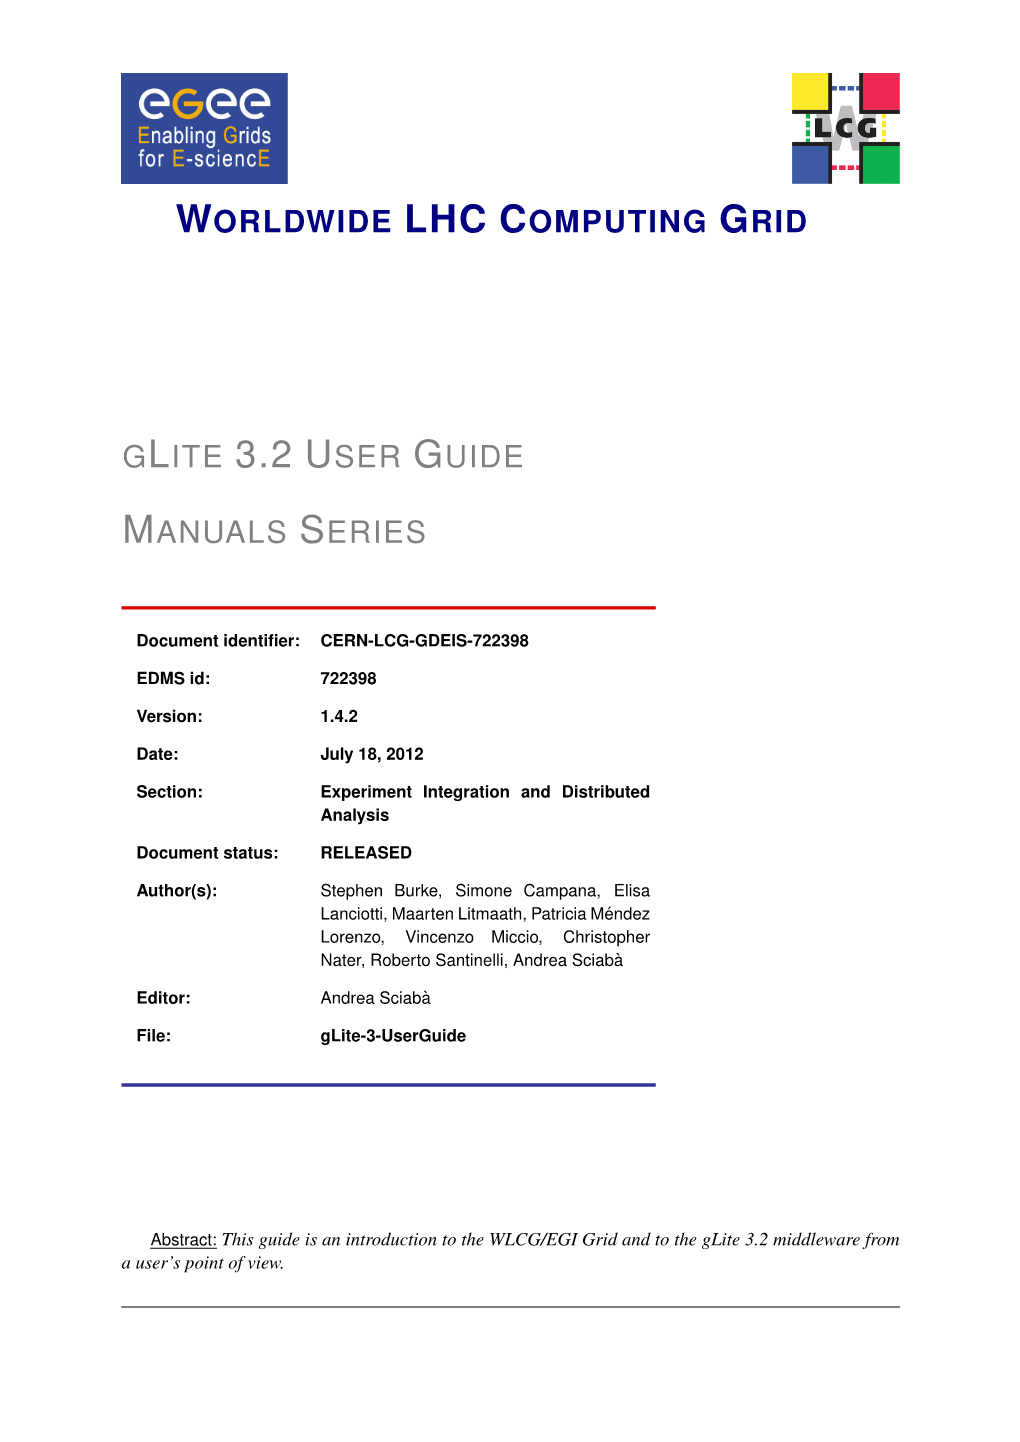 Glite 3.2 User Guide